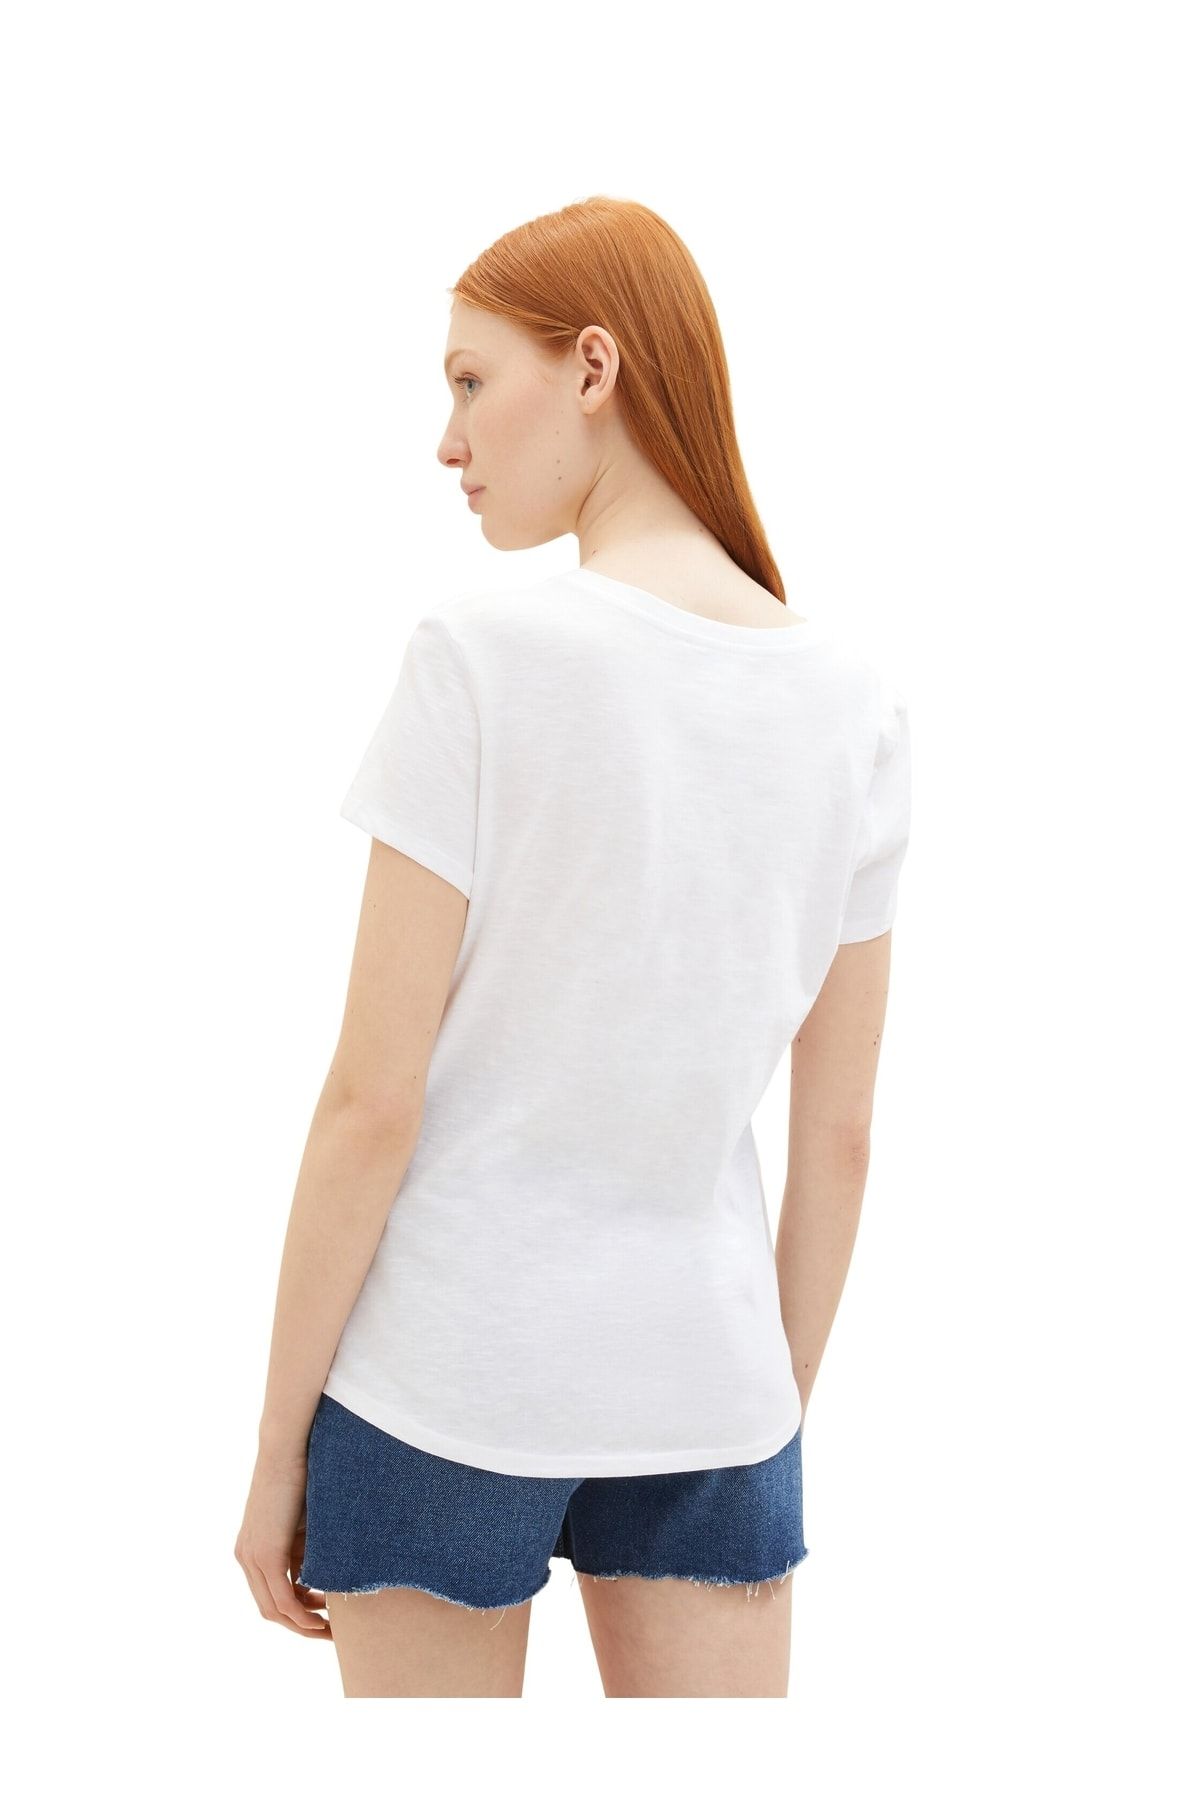 Tom Tailor Denim Trendyol White - fit - T-Shirt Regular 